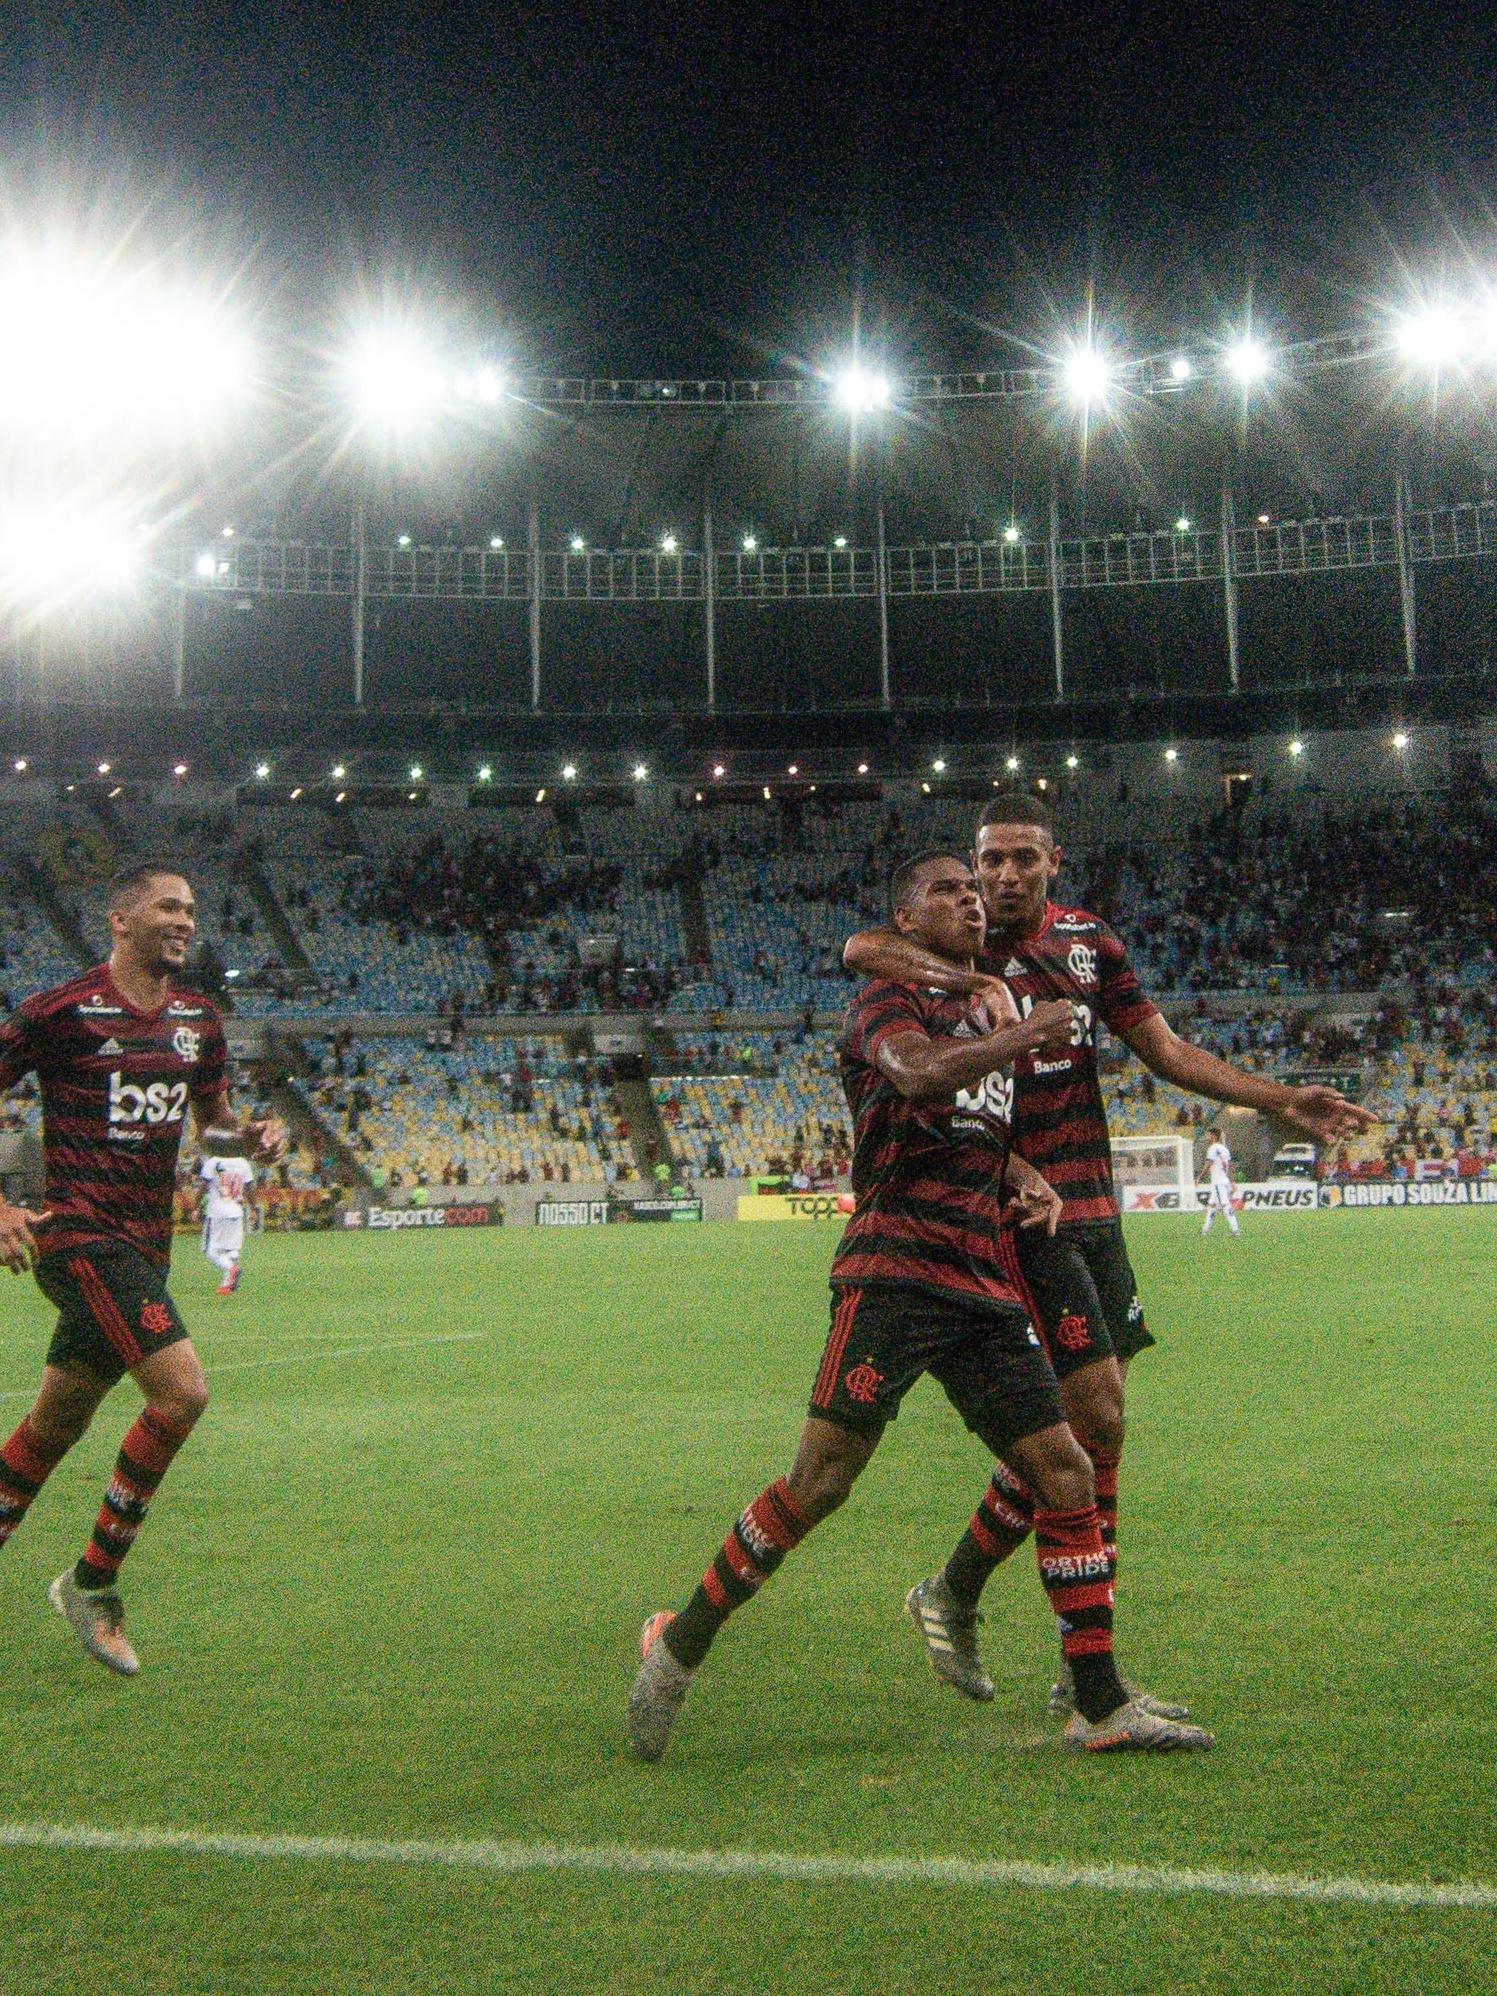 Globo fecha acordo para transmitir quatro jogos do Flamengo na Libertadores  2020 - Coluna do Fla